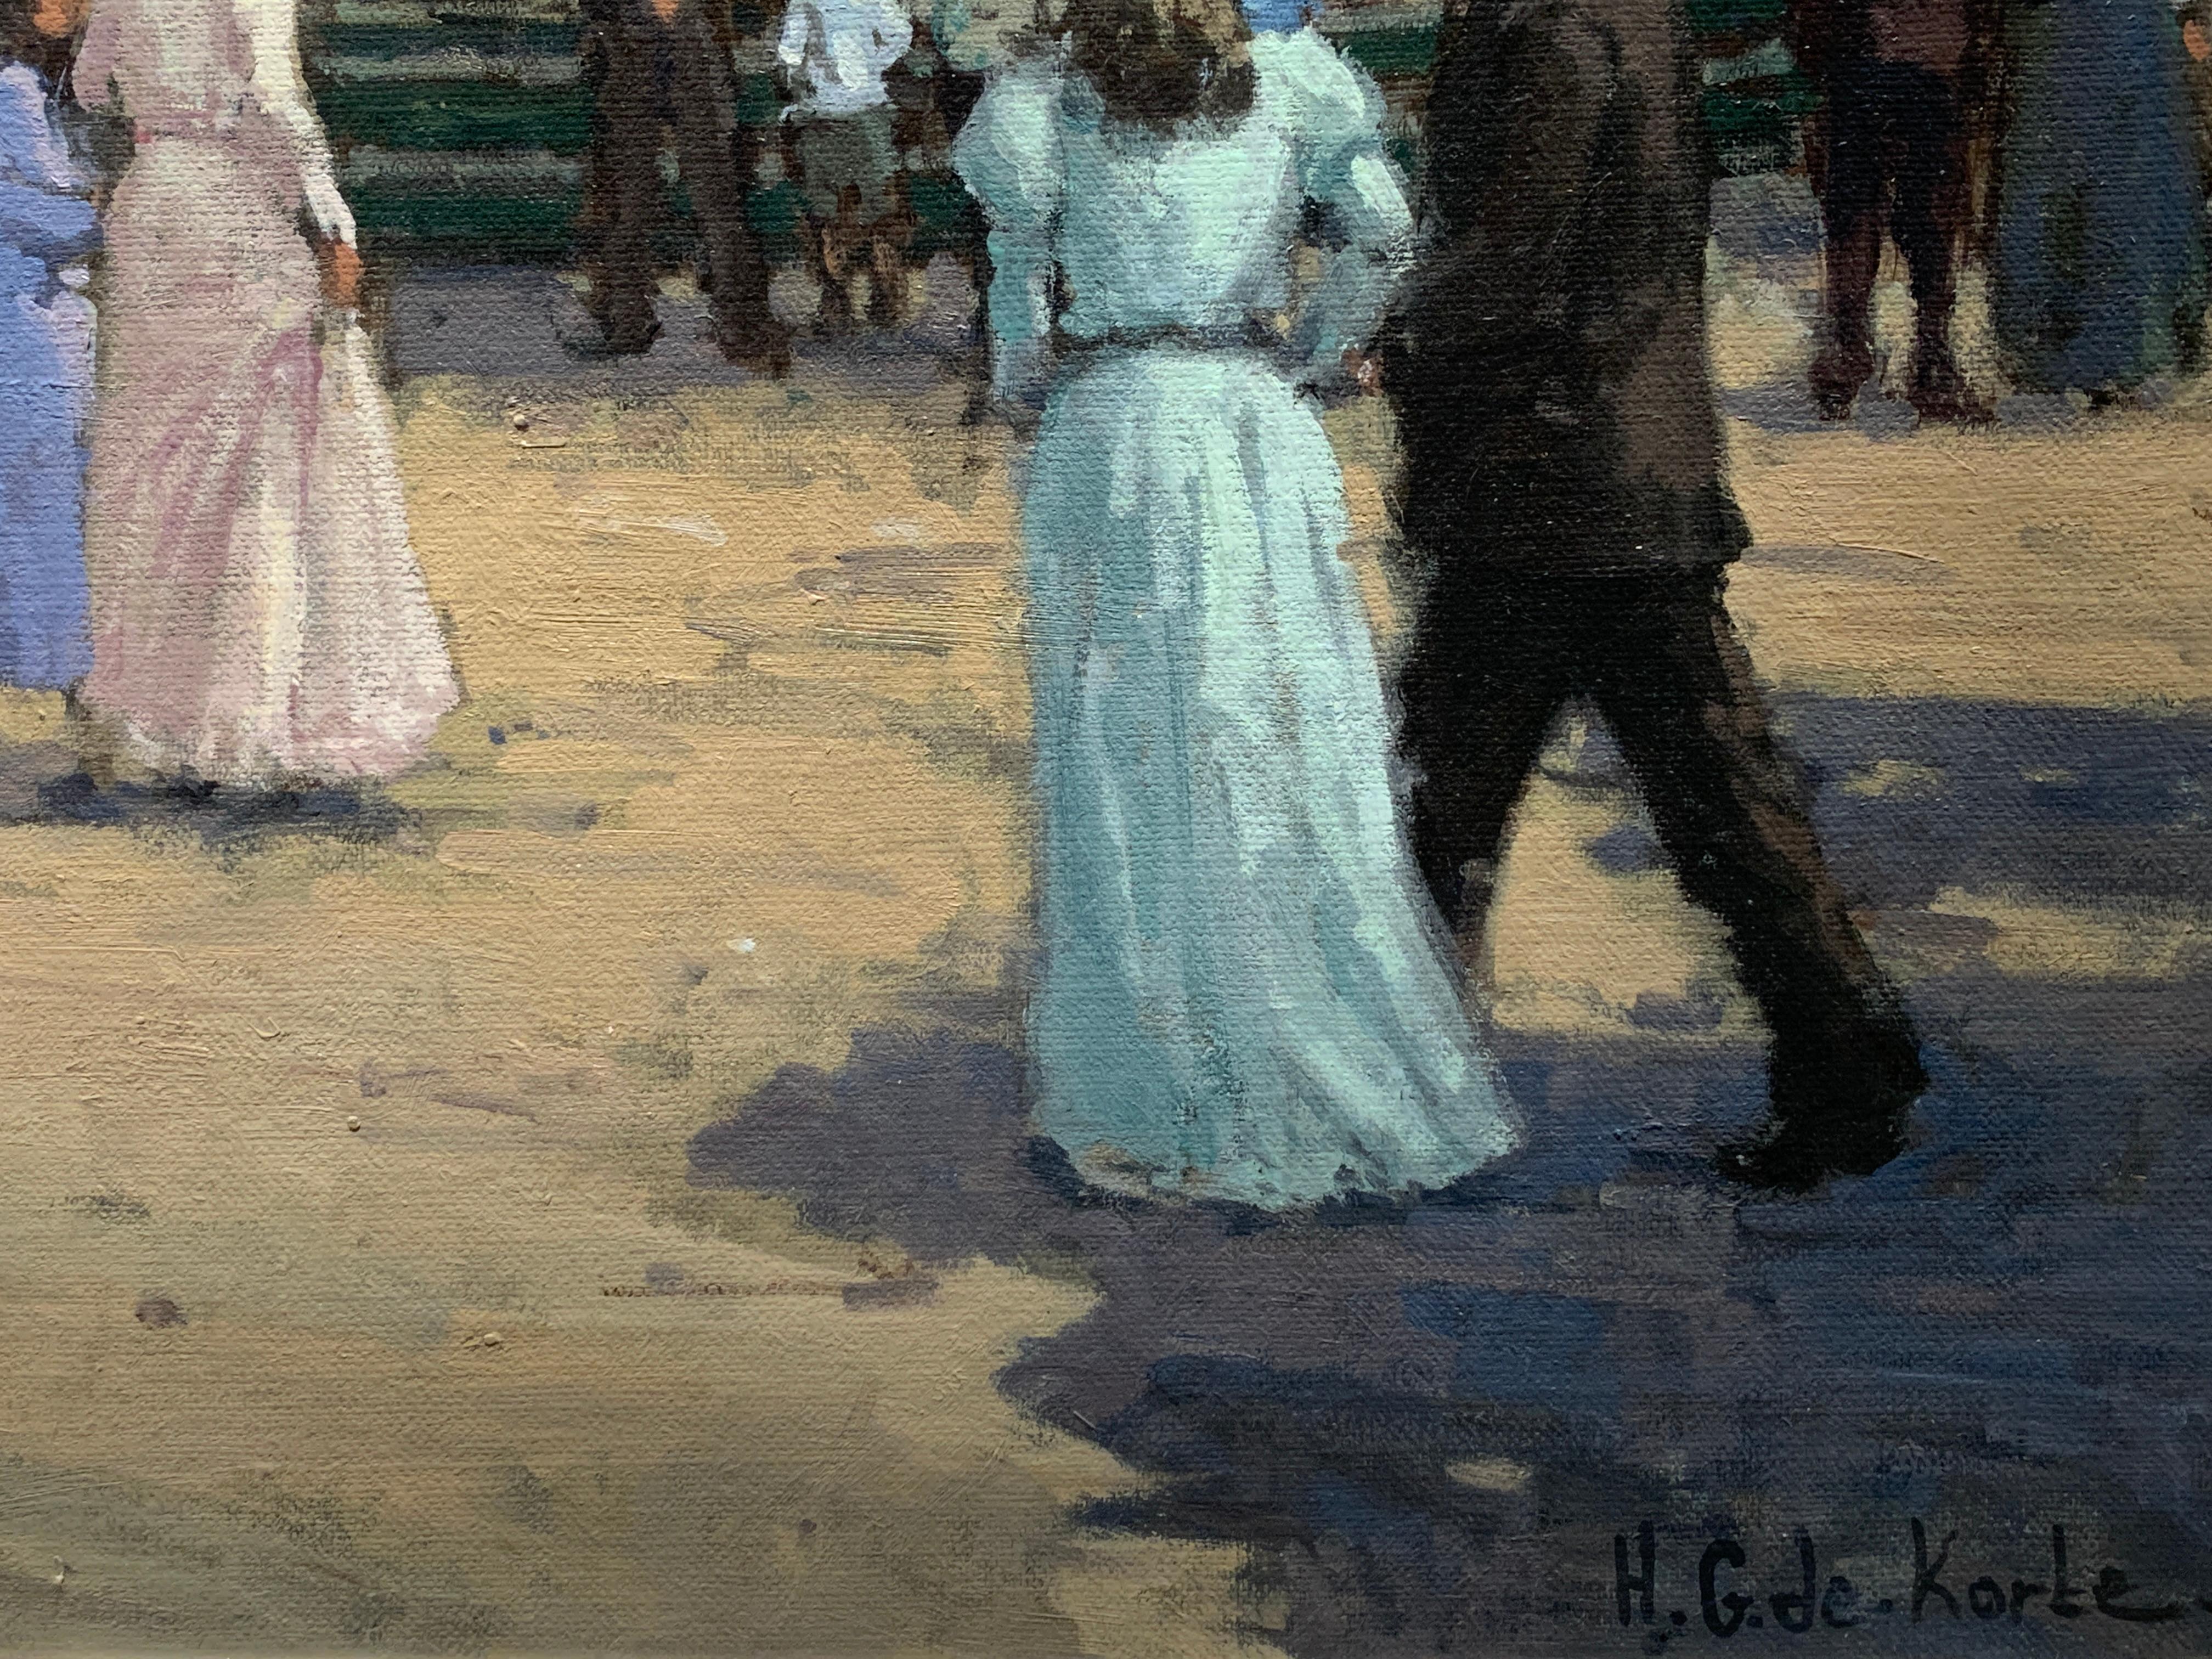 „Carousel“, Henni de Korte, 23x27 Zoll, Öl auf Leinwand, klassischer Impressionismus (Schwarz), Landscape Painting, von H. G. de Korte